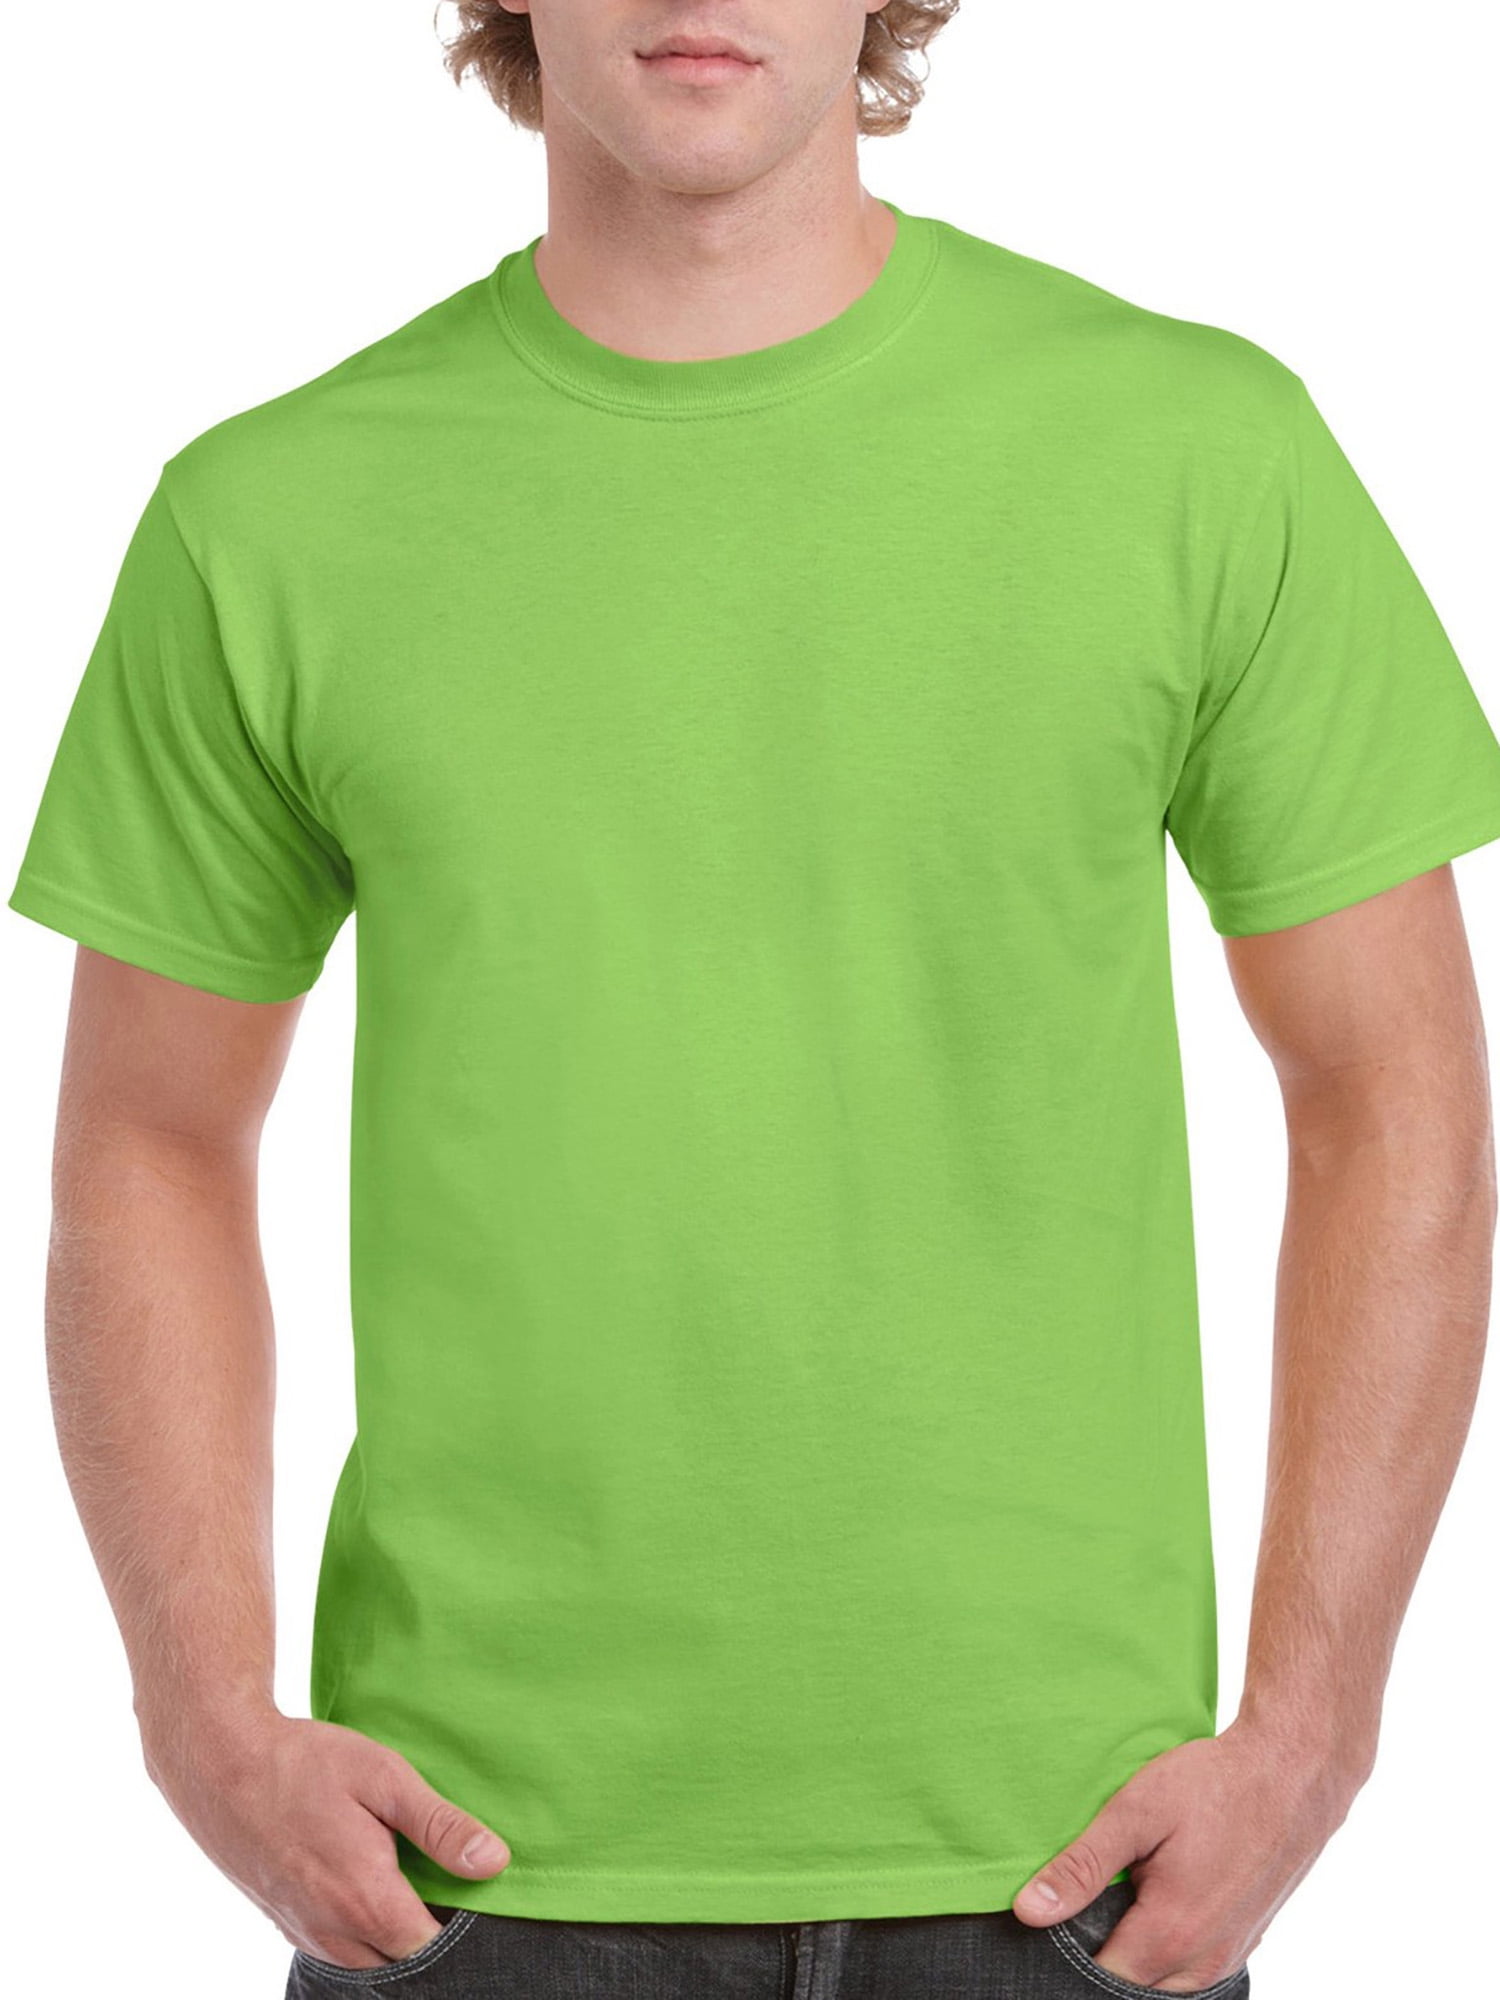 Gildan Big Men's Ultra Cotton Classic Short Sleeve T-Shirt - Walmart.com